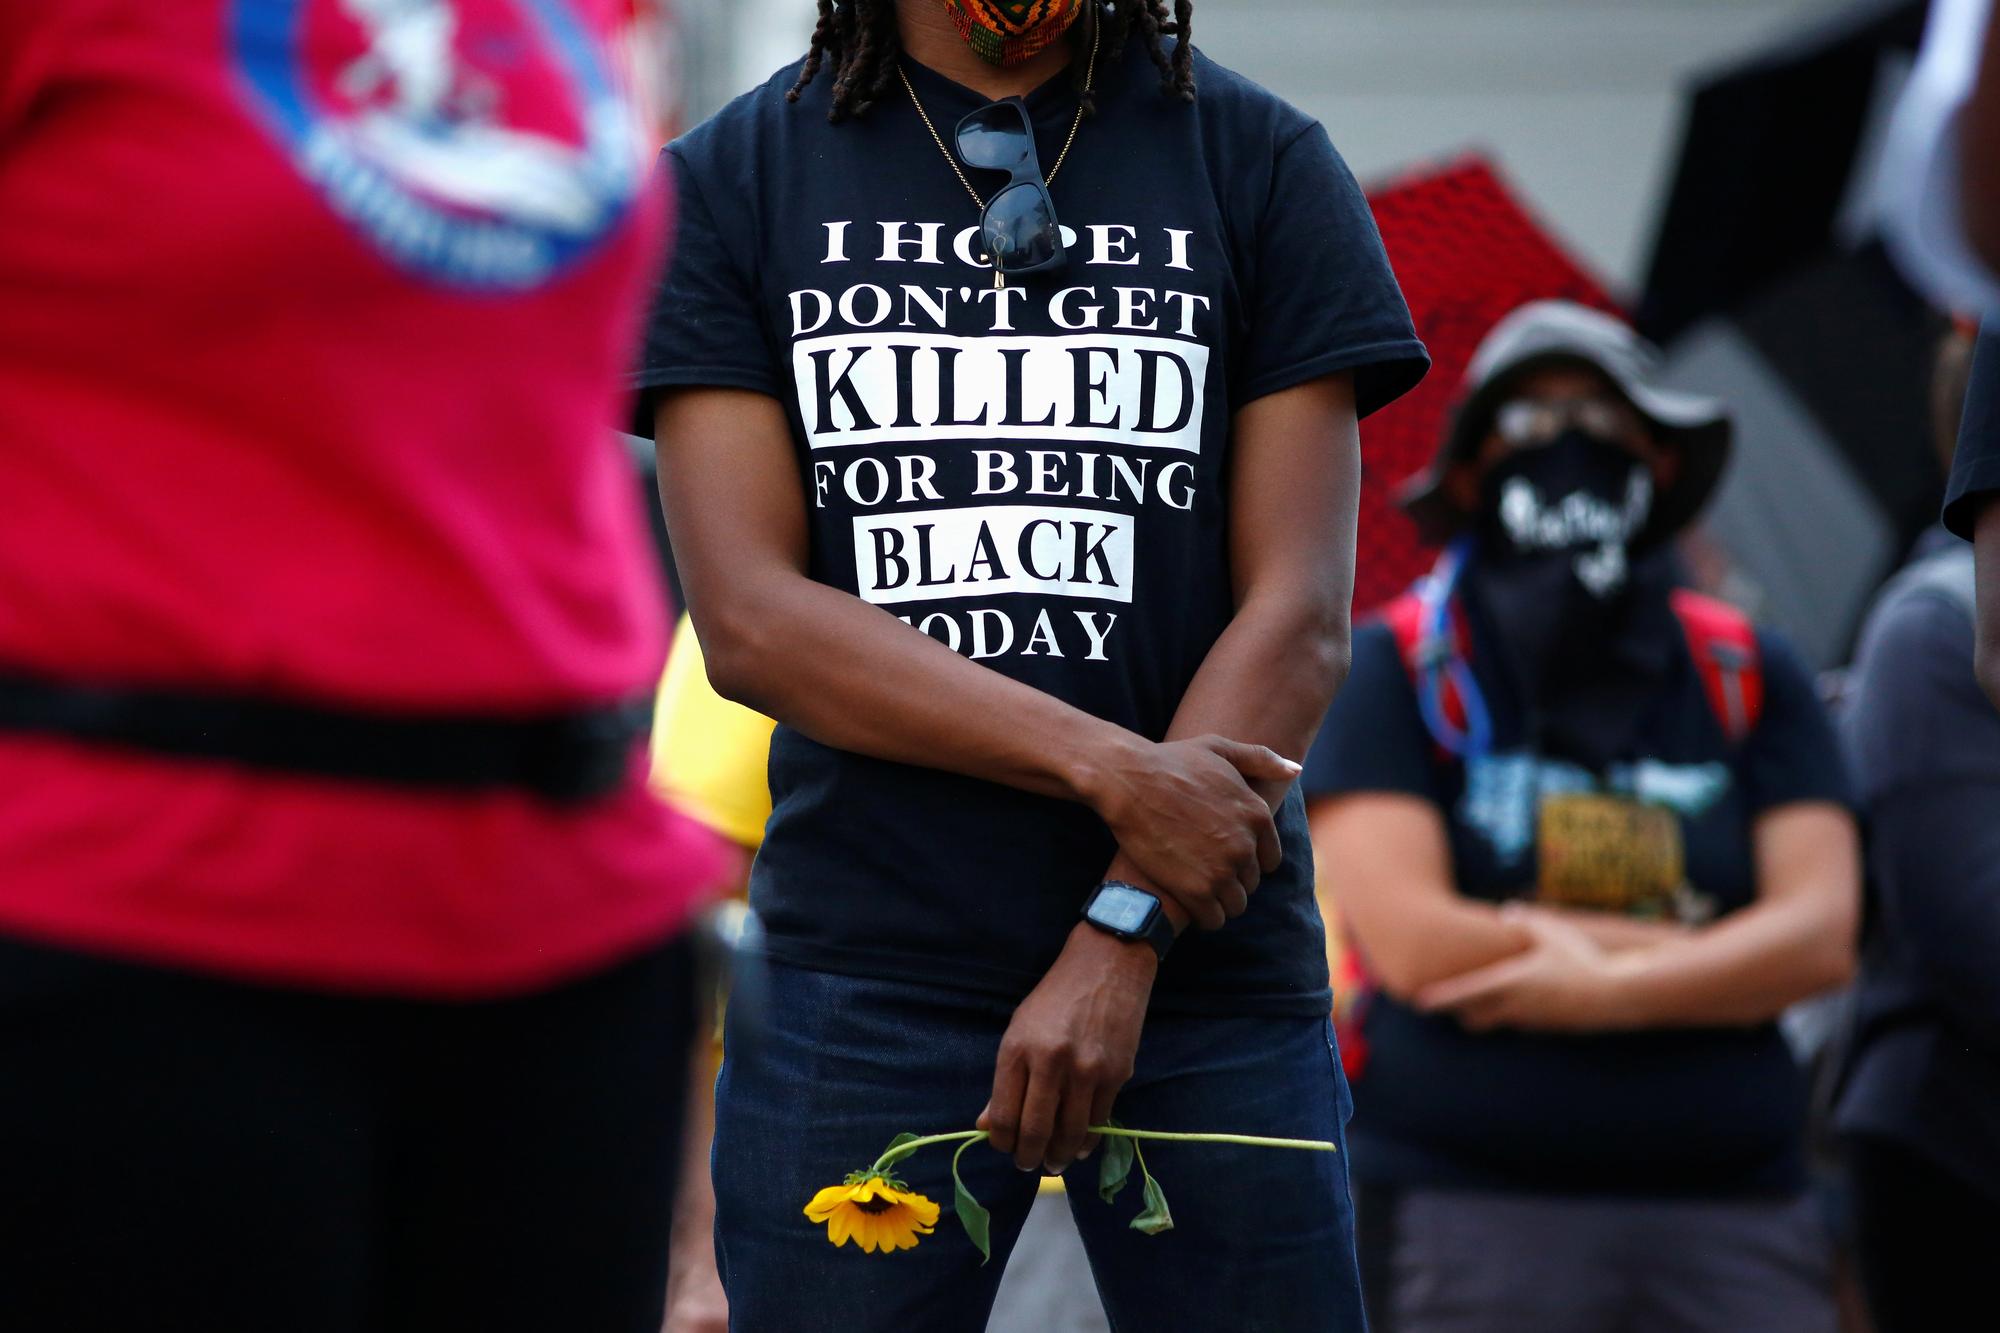 Un manifestant porte un t-shirt où l'on peut lire: "J'espère que je ne serai pas tué aujourd'hui parce que je suis noir". Denver, le 24 août 2020. [Reuters - Kevin Mohatt]